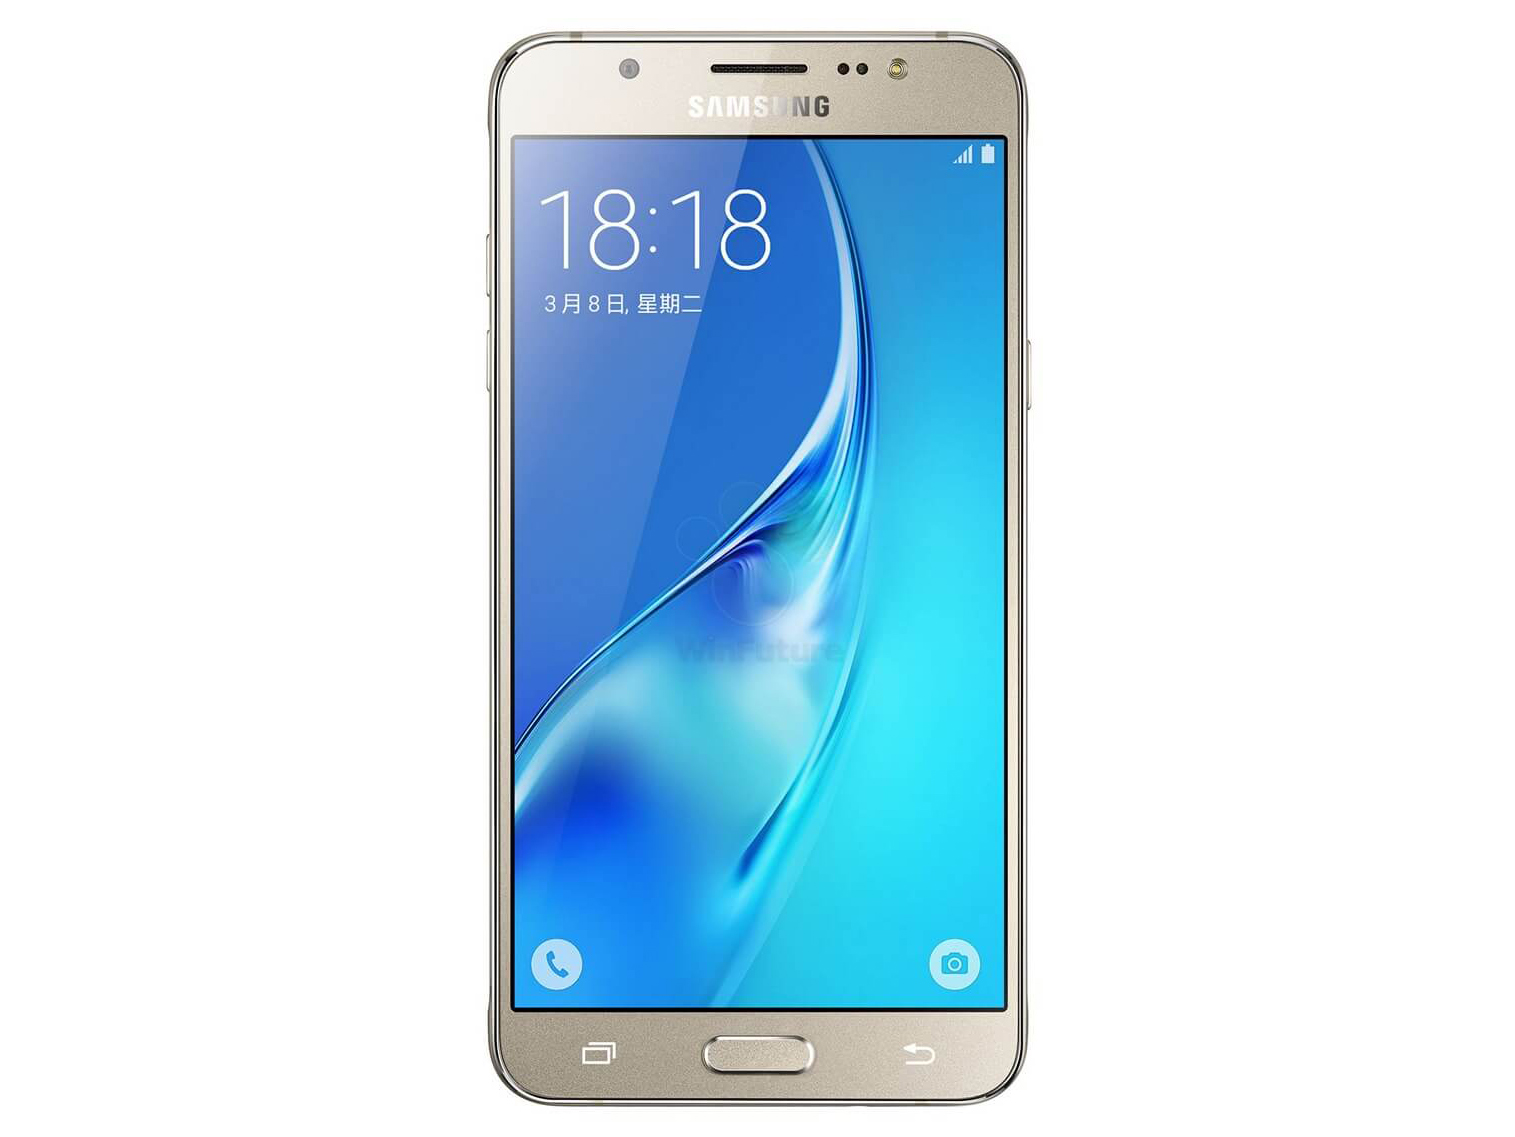 Almeja Franco pintar Samsung Galaxy J5 2016 - Notebookcheck.org